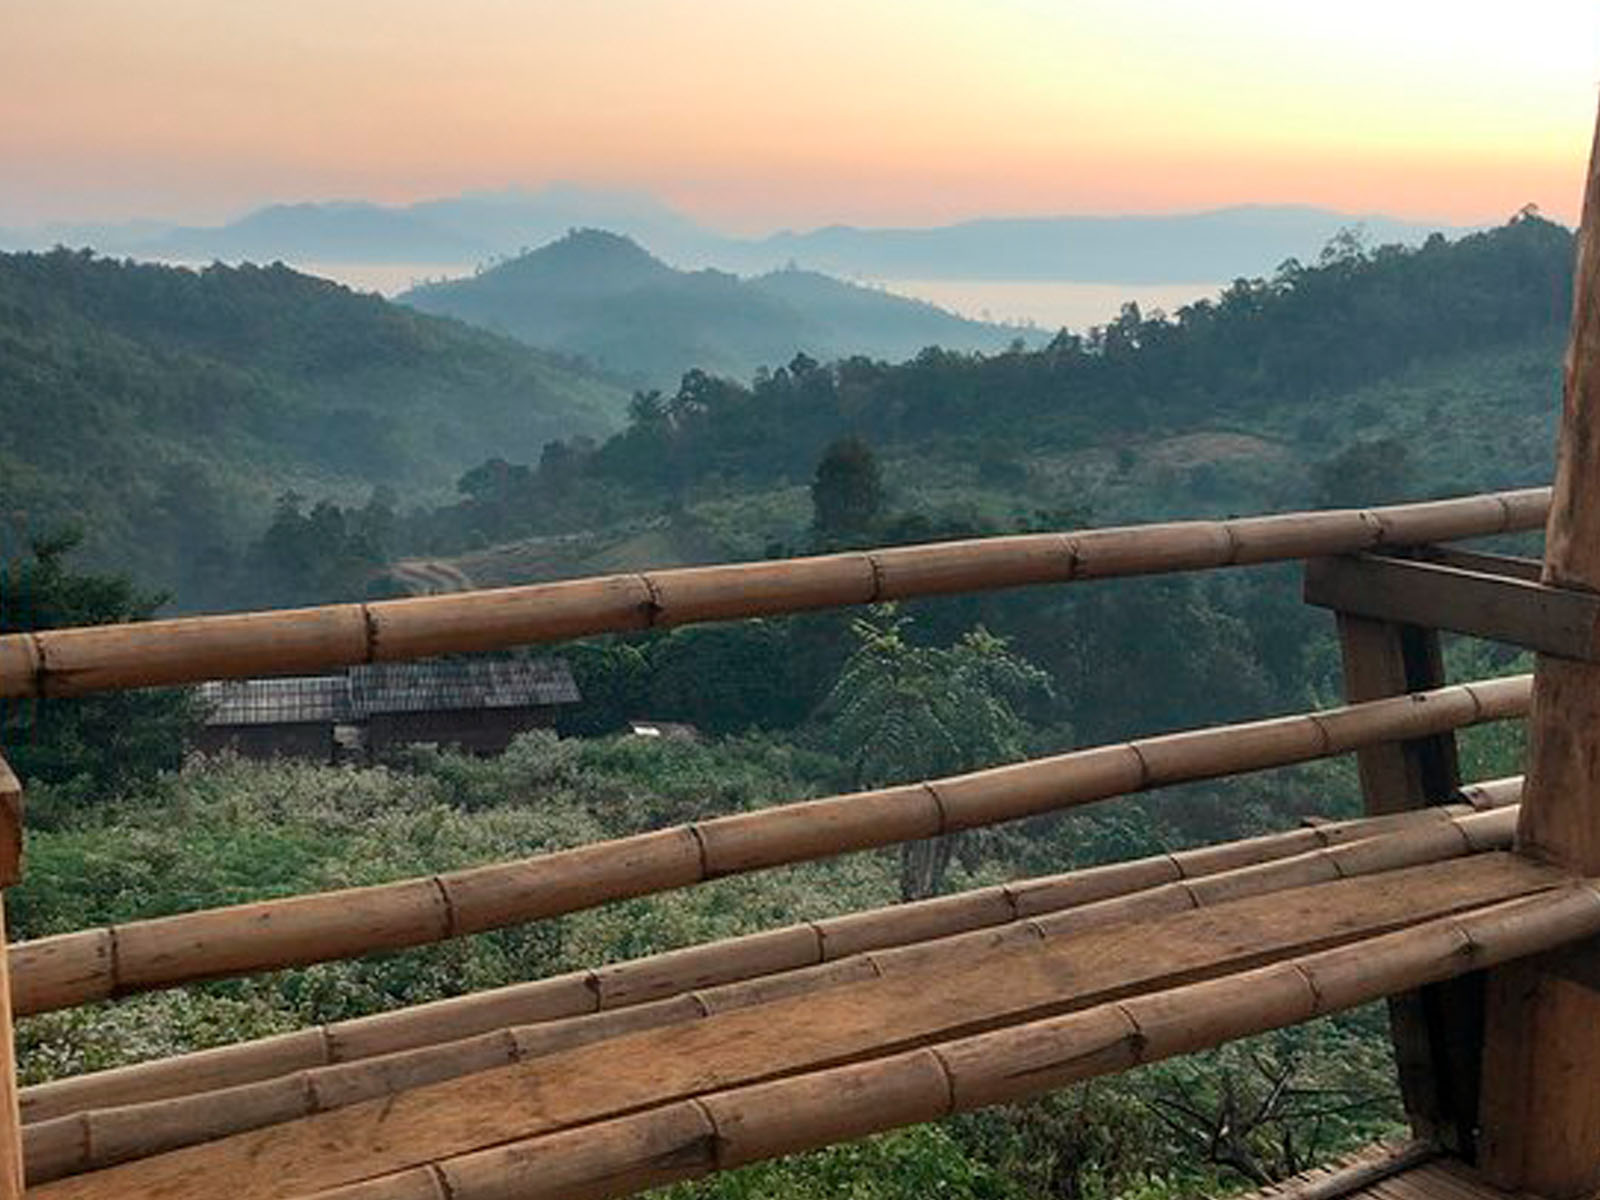 Absolument unique et authentique | Chiang Mai Trekking | Le meilleur trekking à Chiang Mai avec Piroon Nantaya